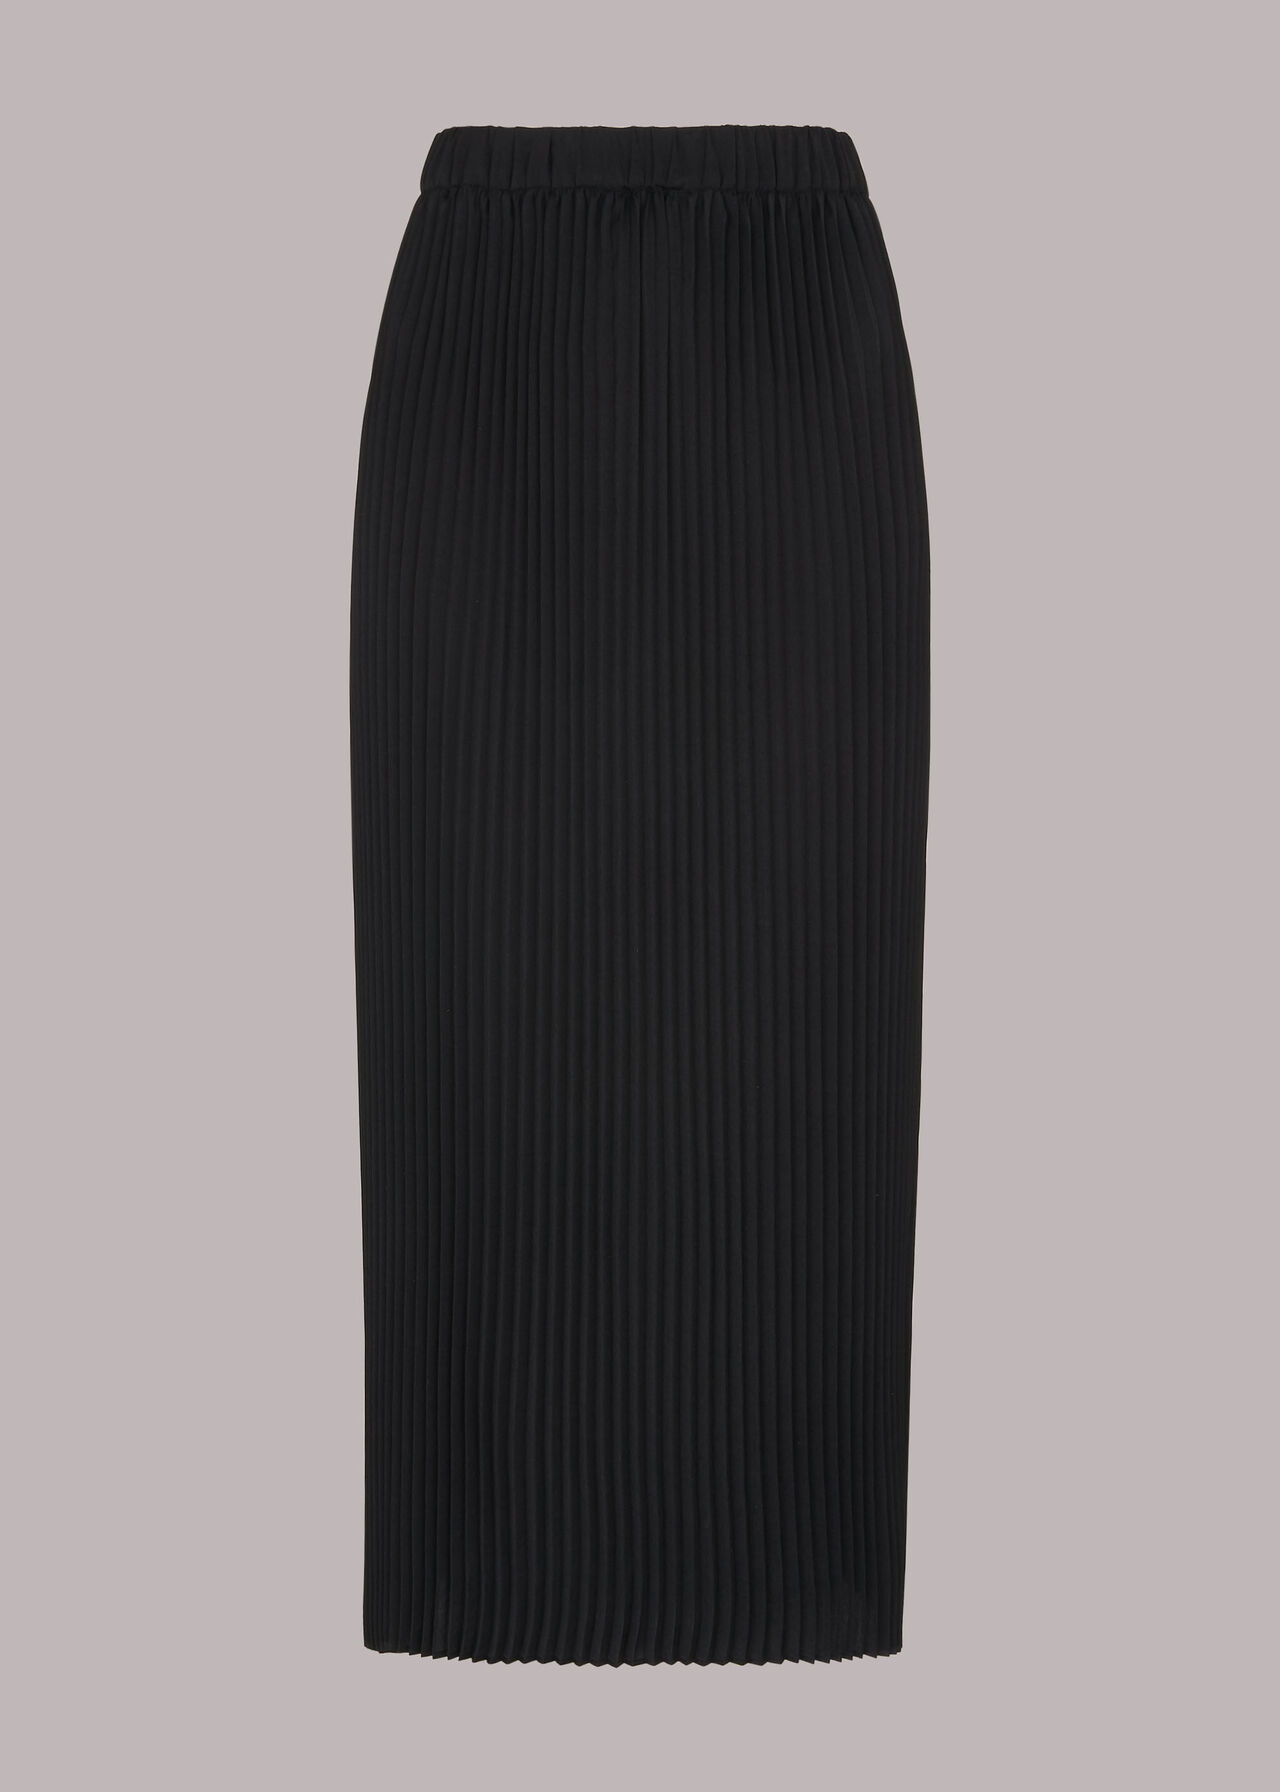 Black Pleated Skirt | WHISTLES